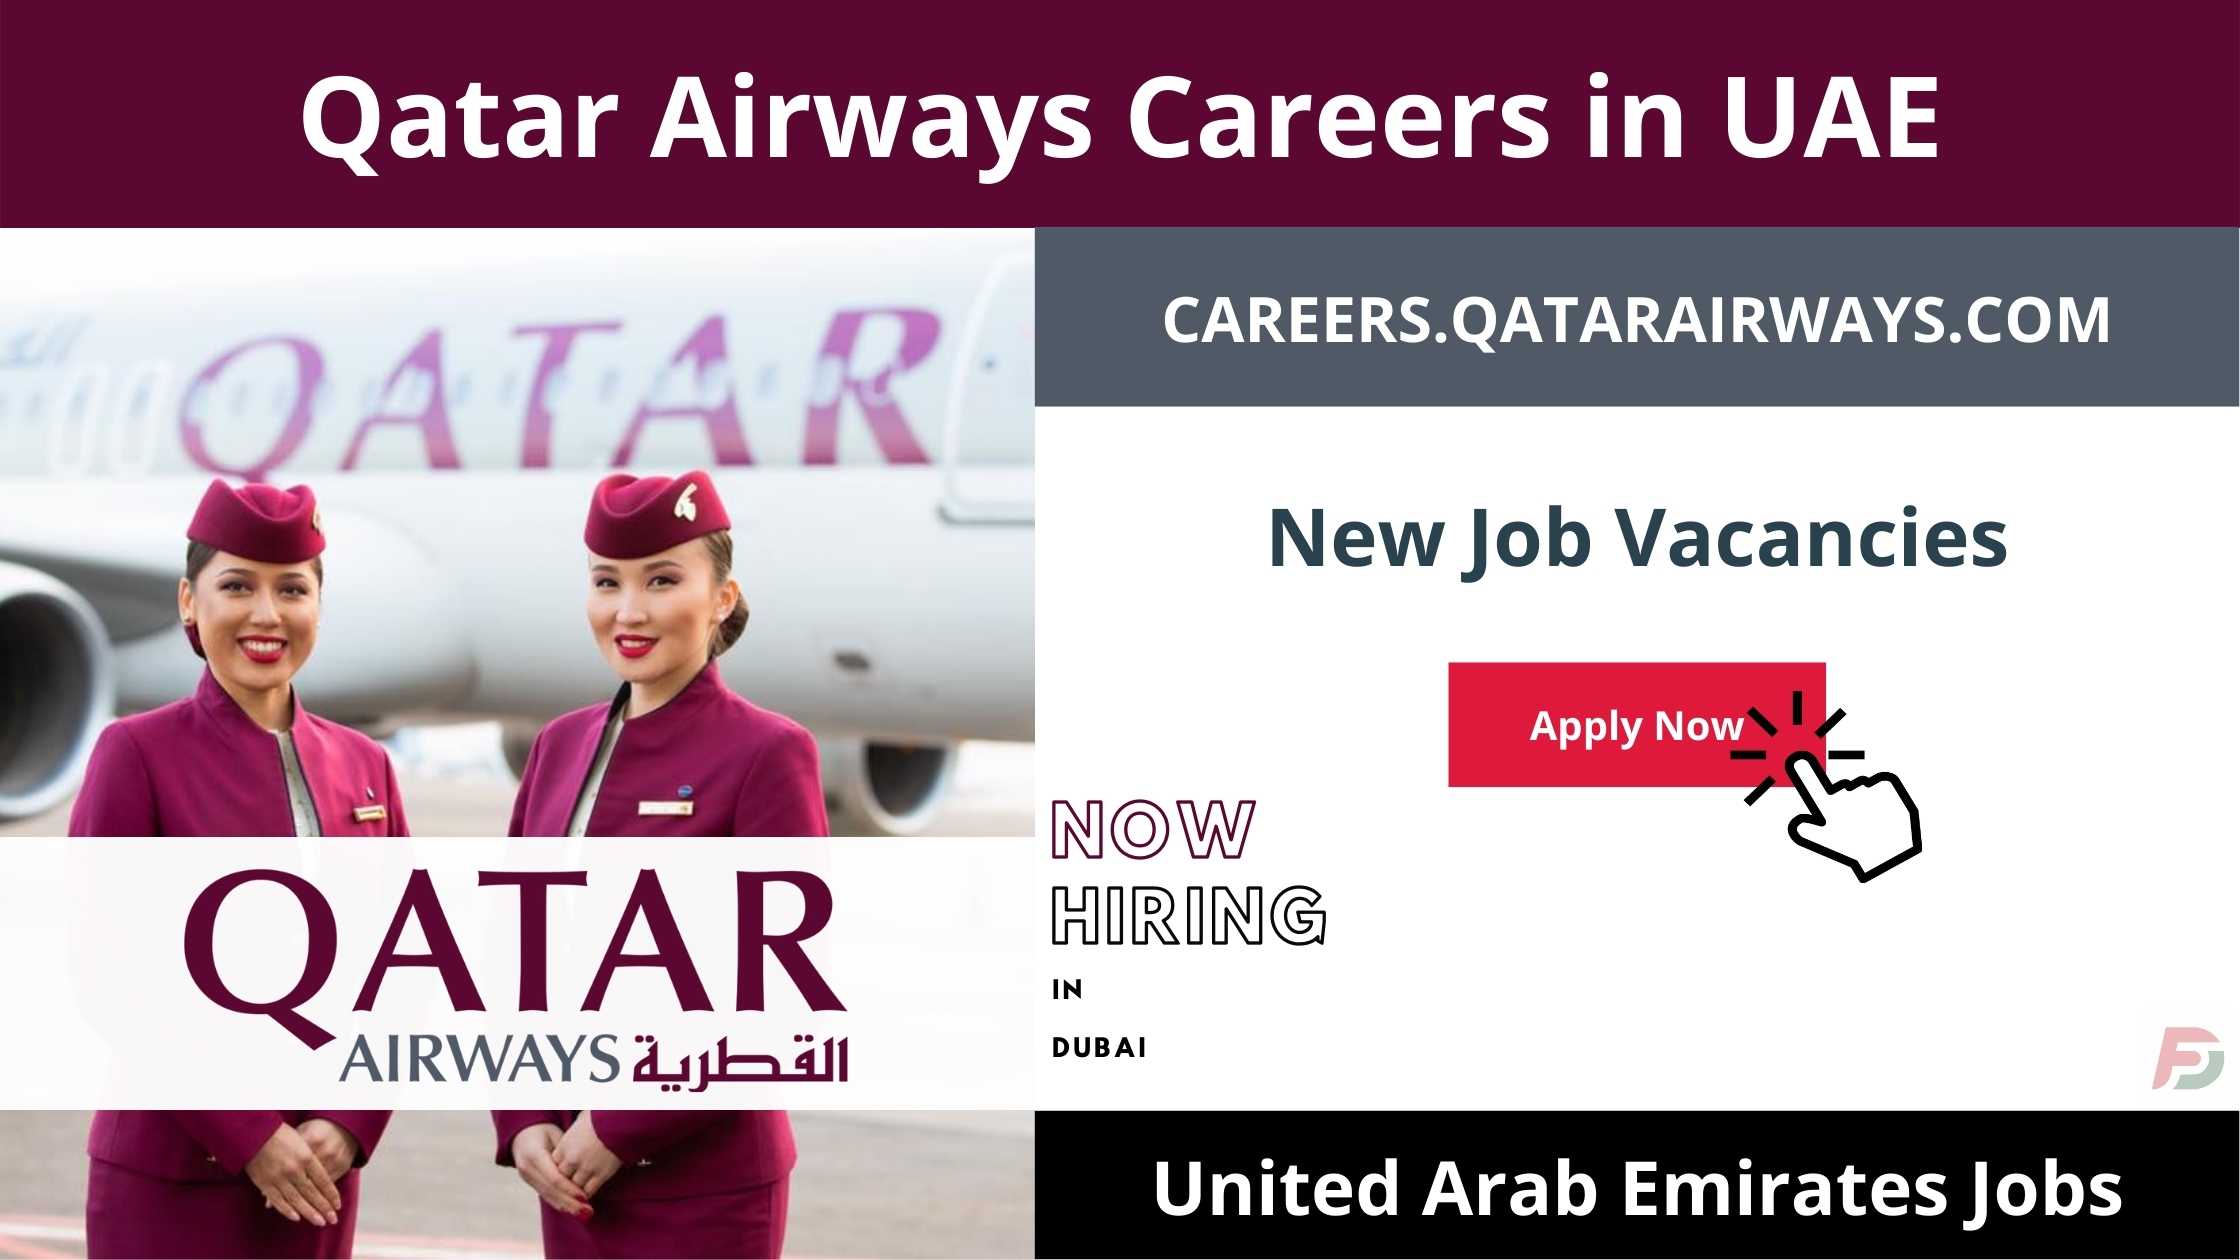 Qatar Airways Careers in UAE